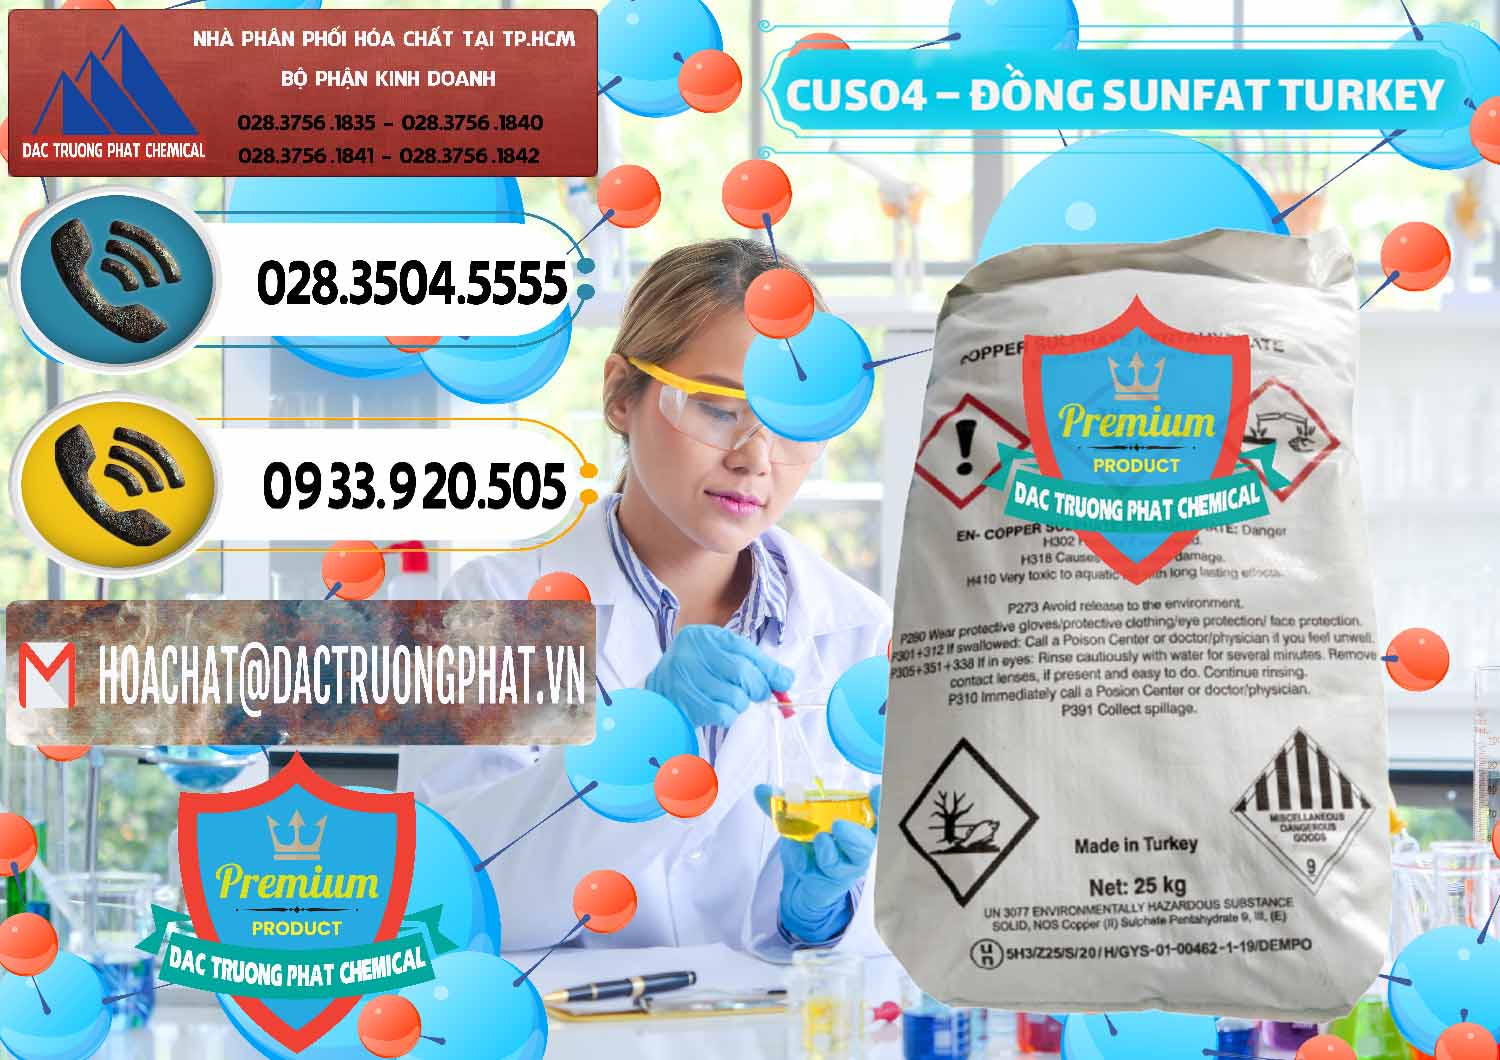 Công ty chuyên phân phối & bán CuSO4 – Đồng Sunfat Thổ Nhĩ Kỳ Turkey - 0481 - Nơi phân phối - kinh doanh hóa chất tại TP.HCM - hoachatdetnhuom.vn